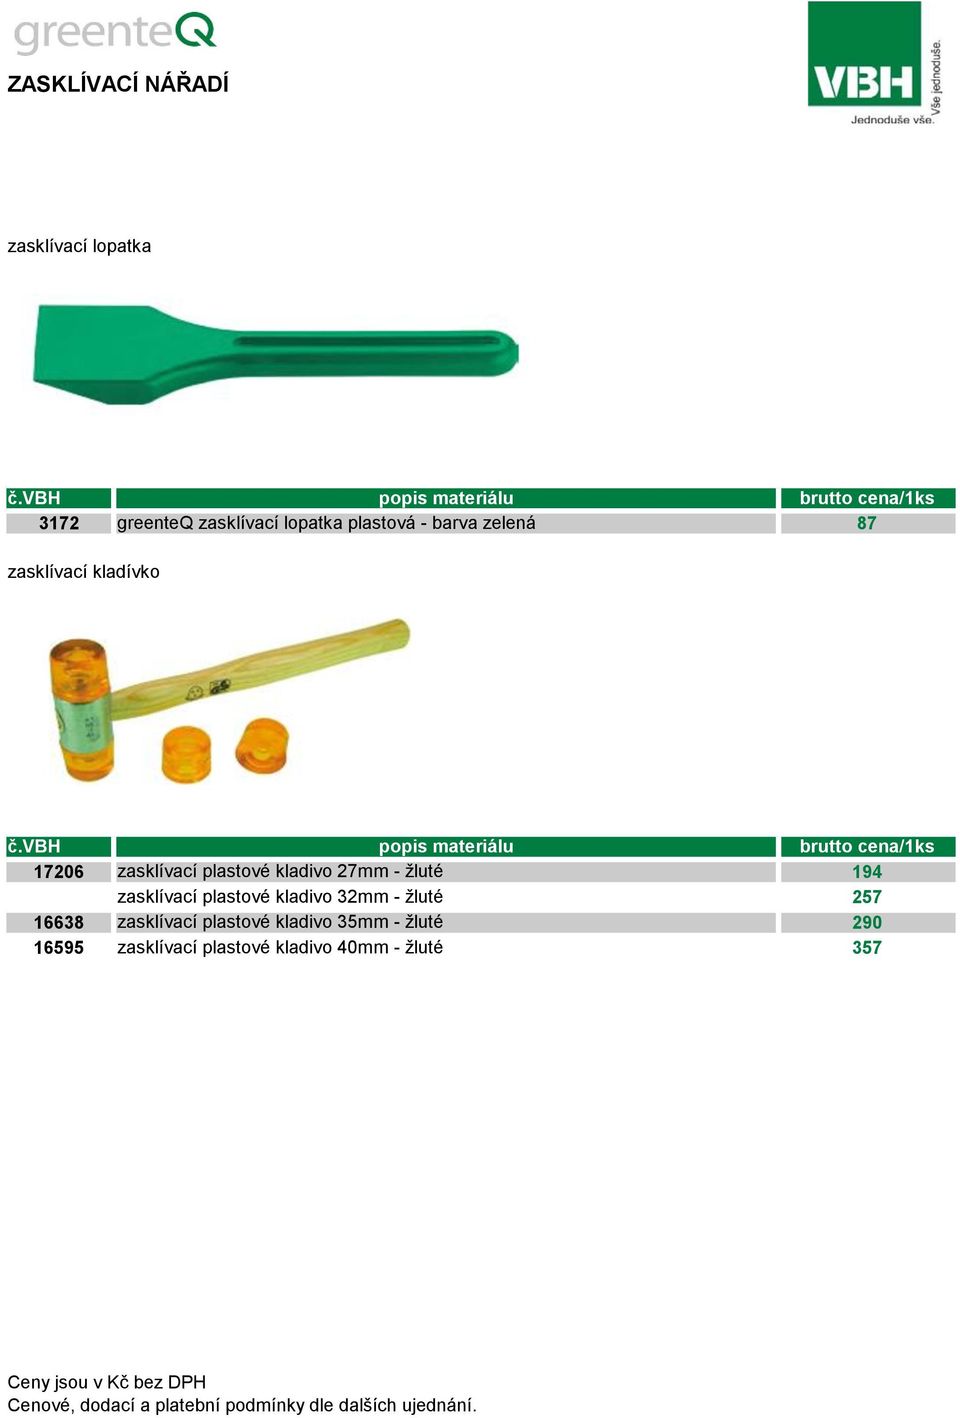 č.vbh popis materiálu cena/1ks 17206 zasklívací plastové kladivo 27mm - žluté 194 zasklívací plastové